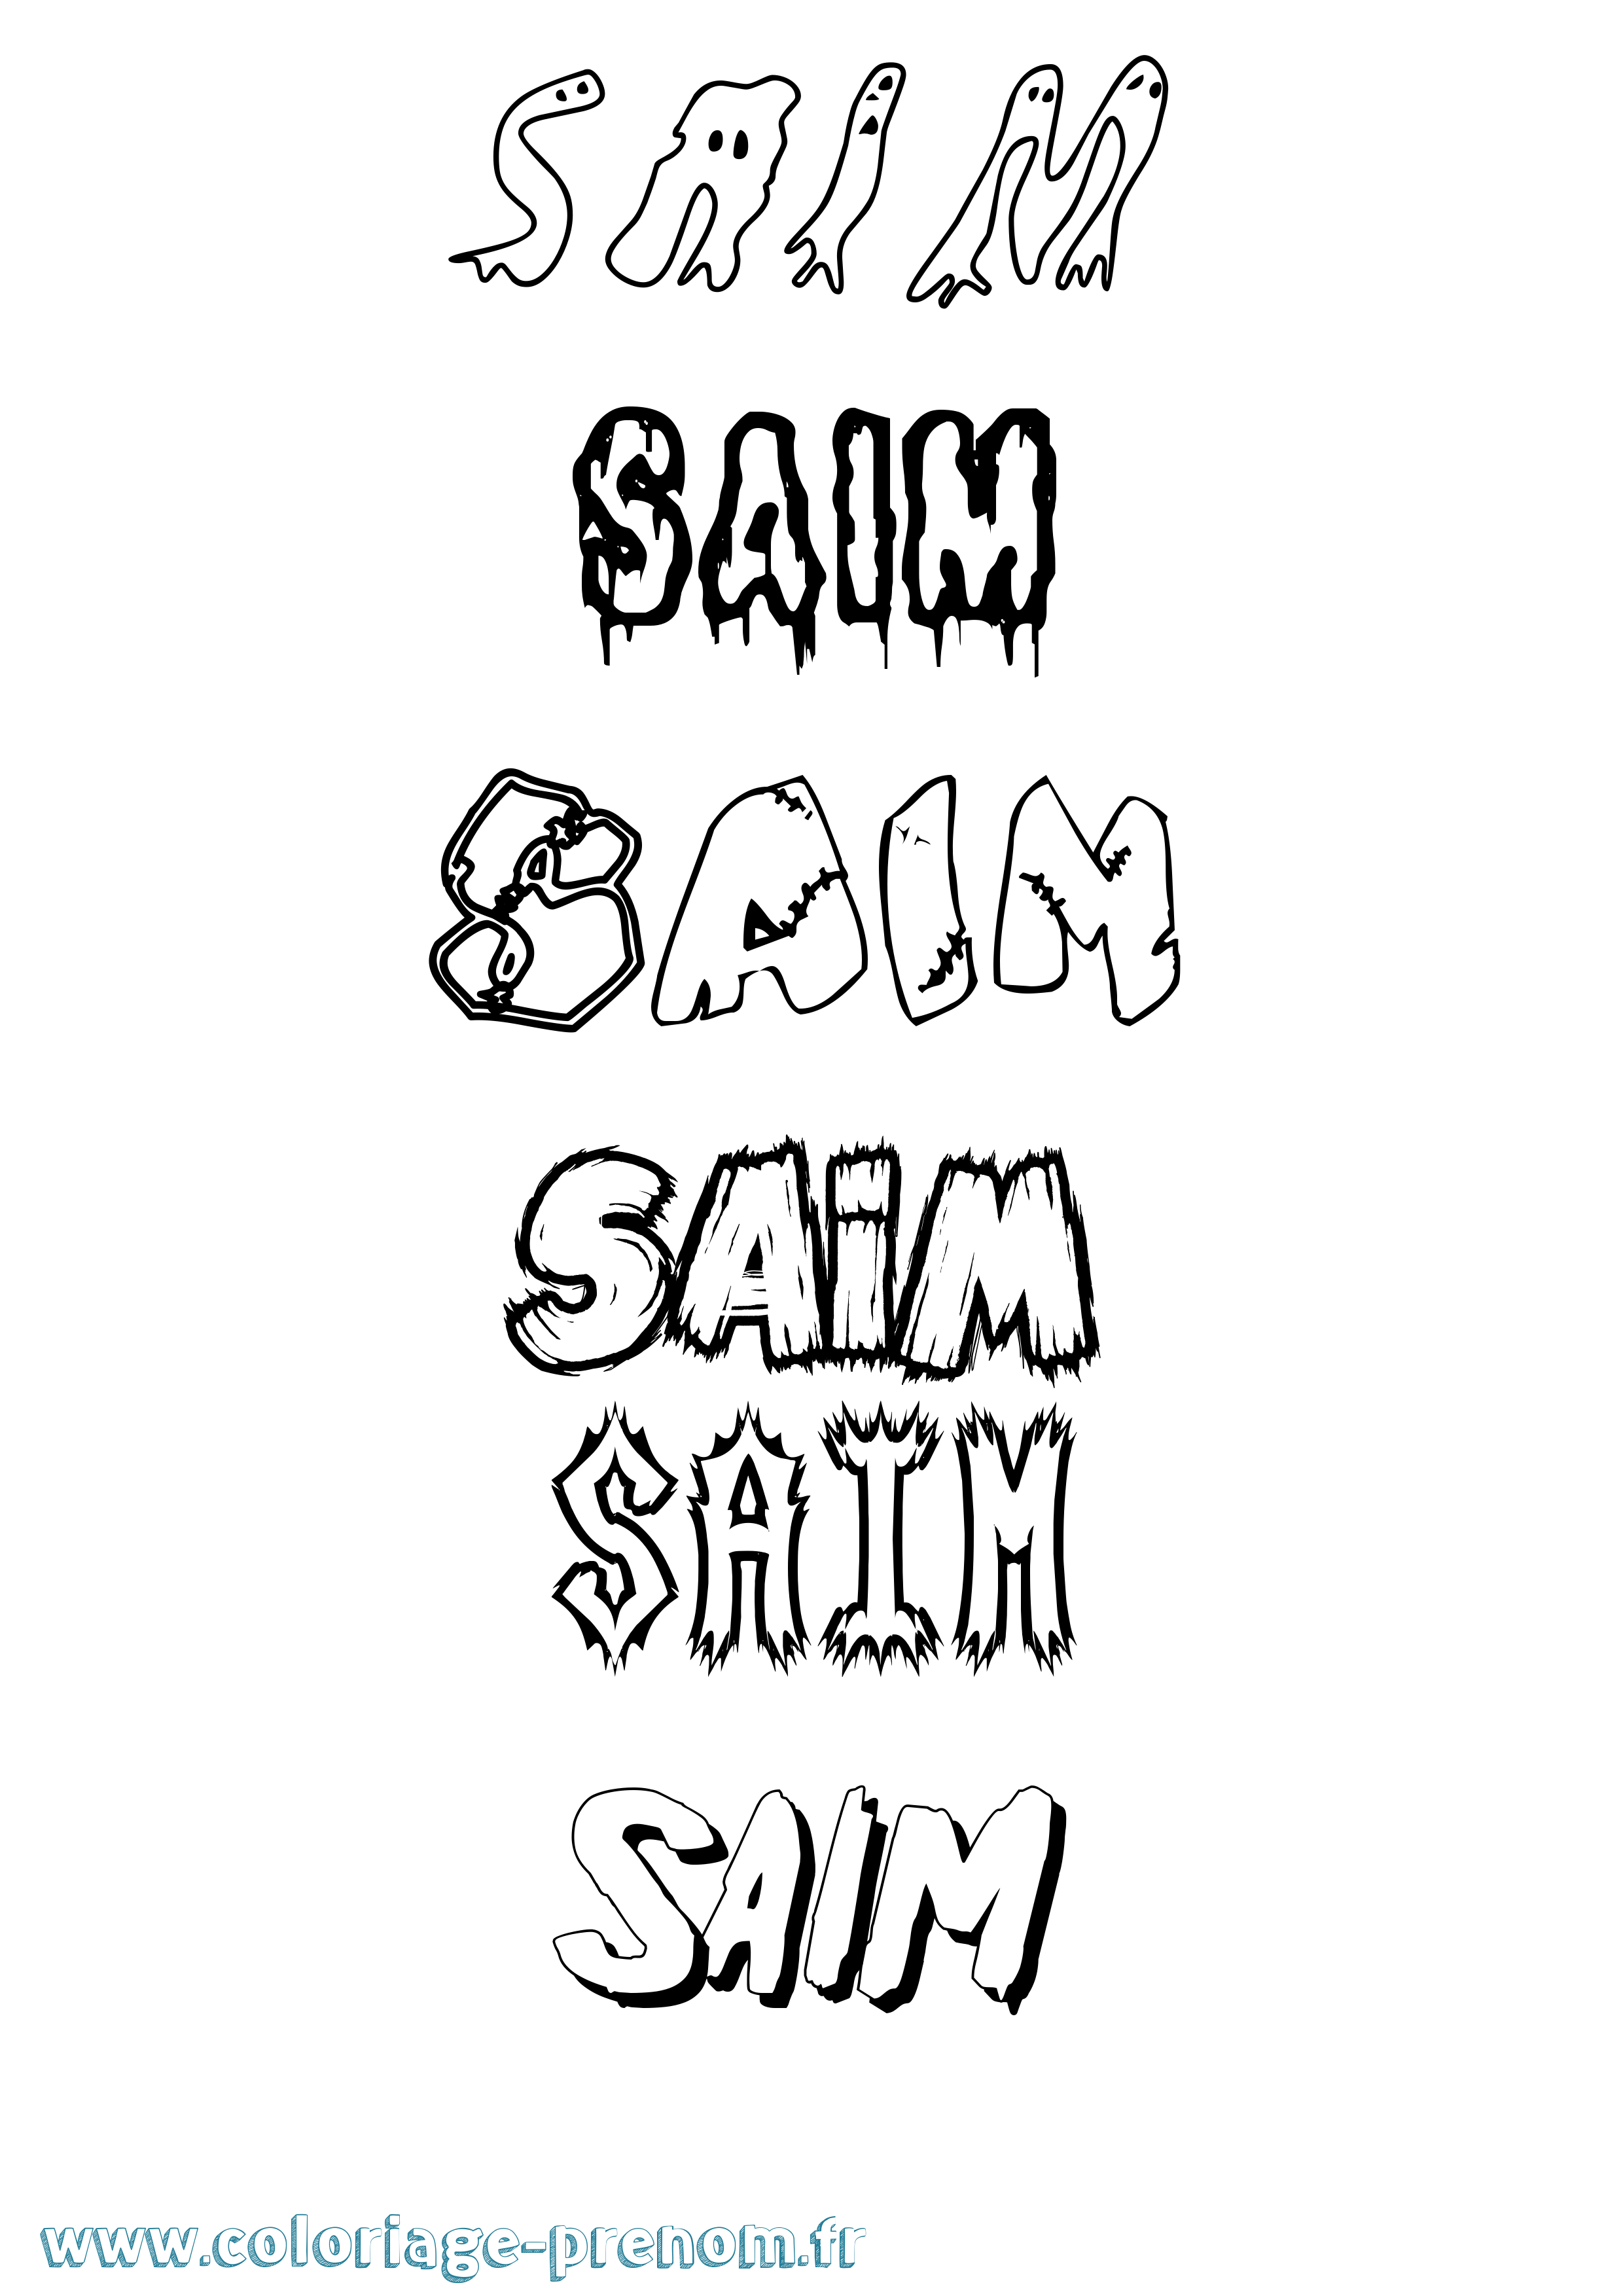 Coloriage prénom Saim Frisson